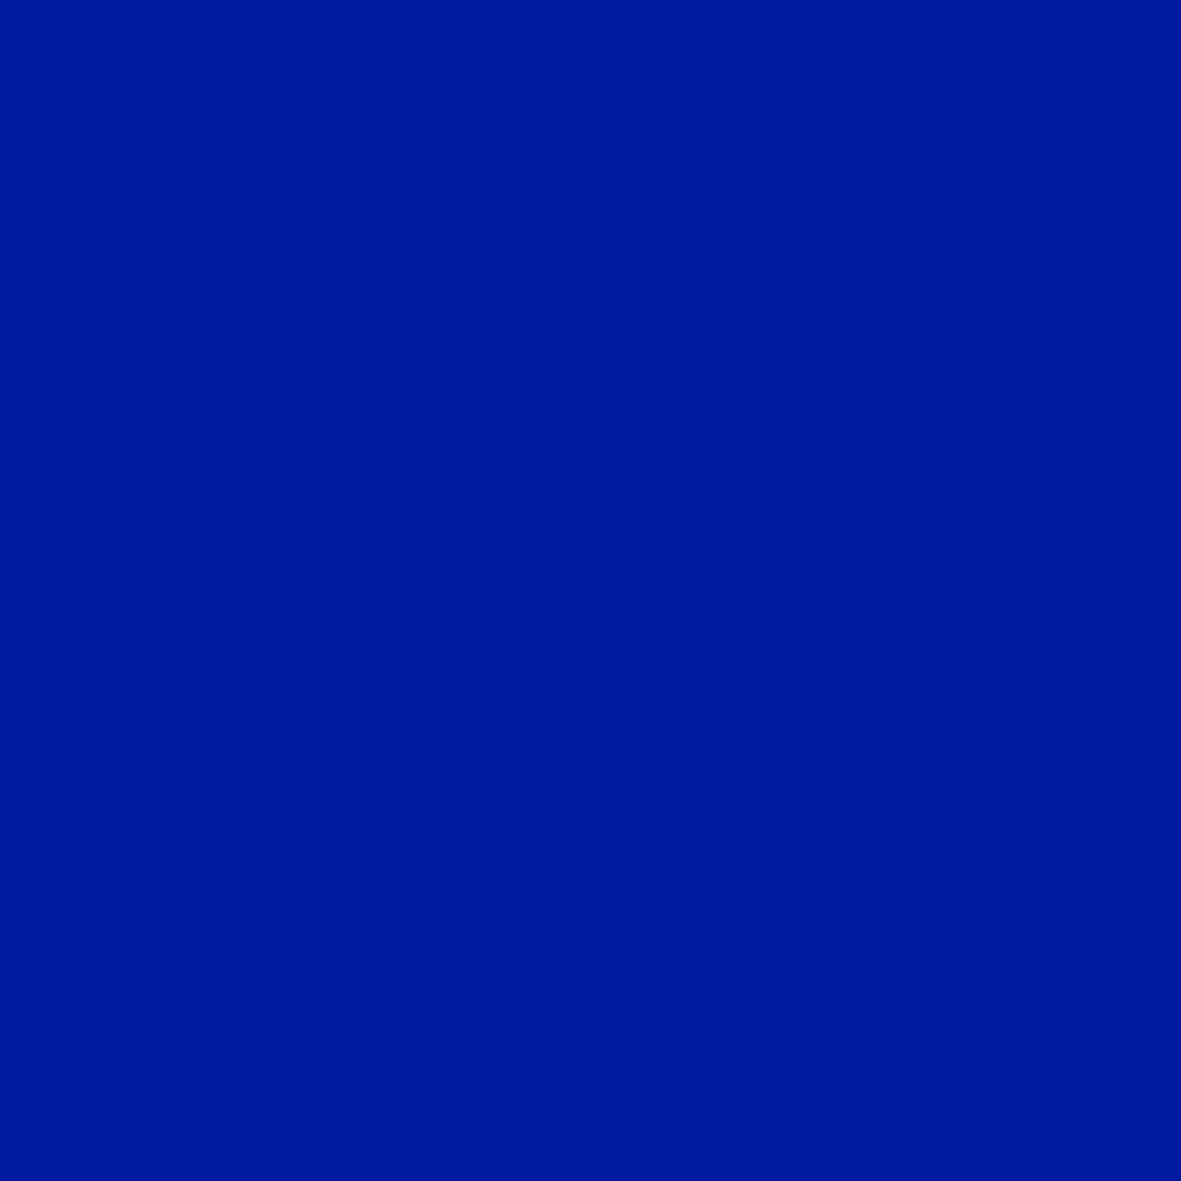 Gravotherm Folienfarbe Mittelblau für Texte, Logos und Muster 